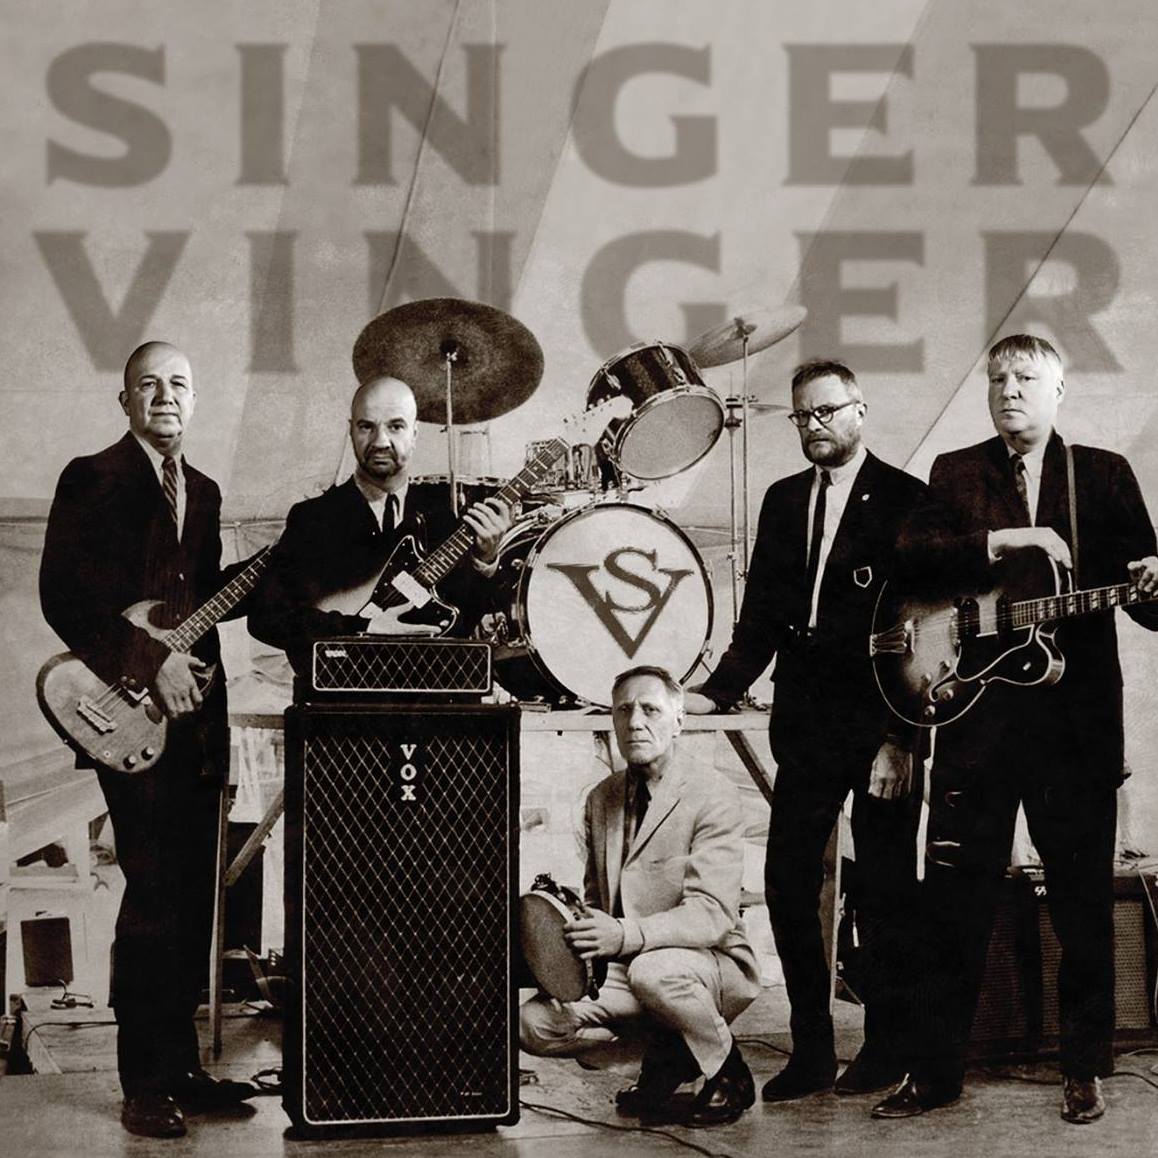 Singer Vinger